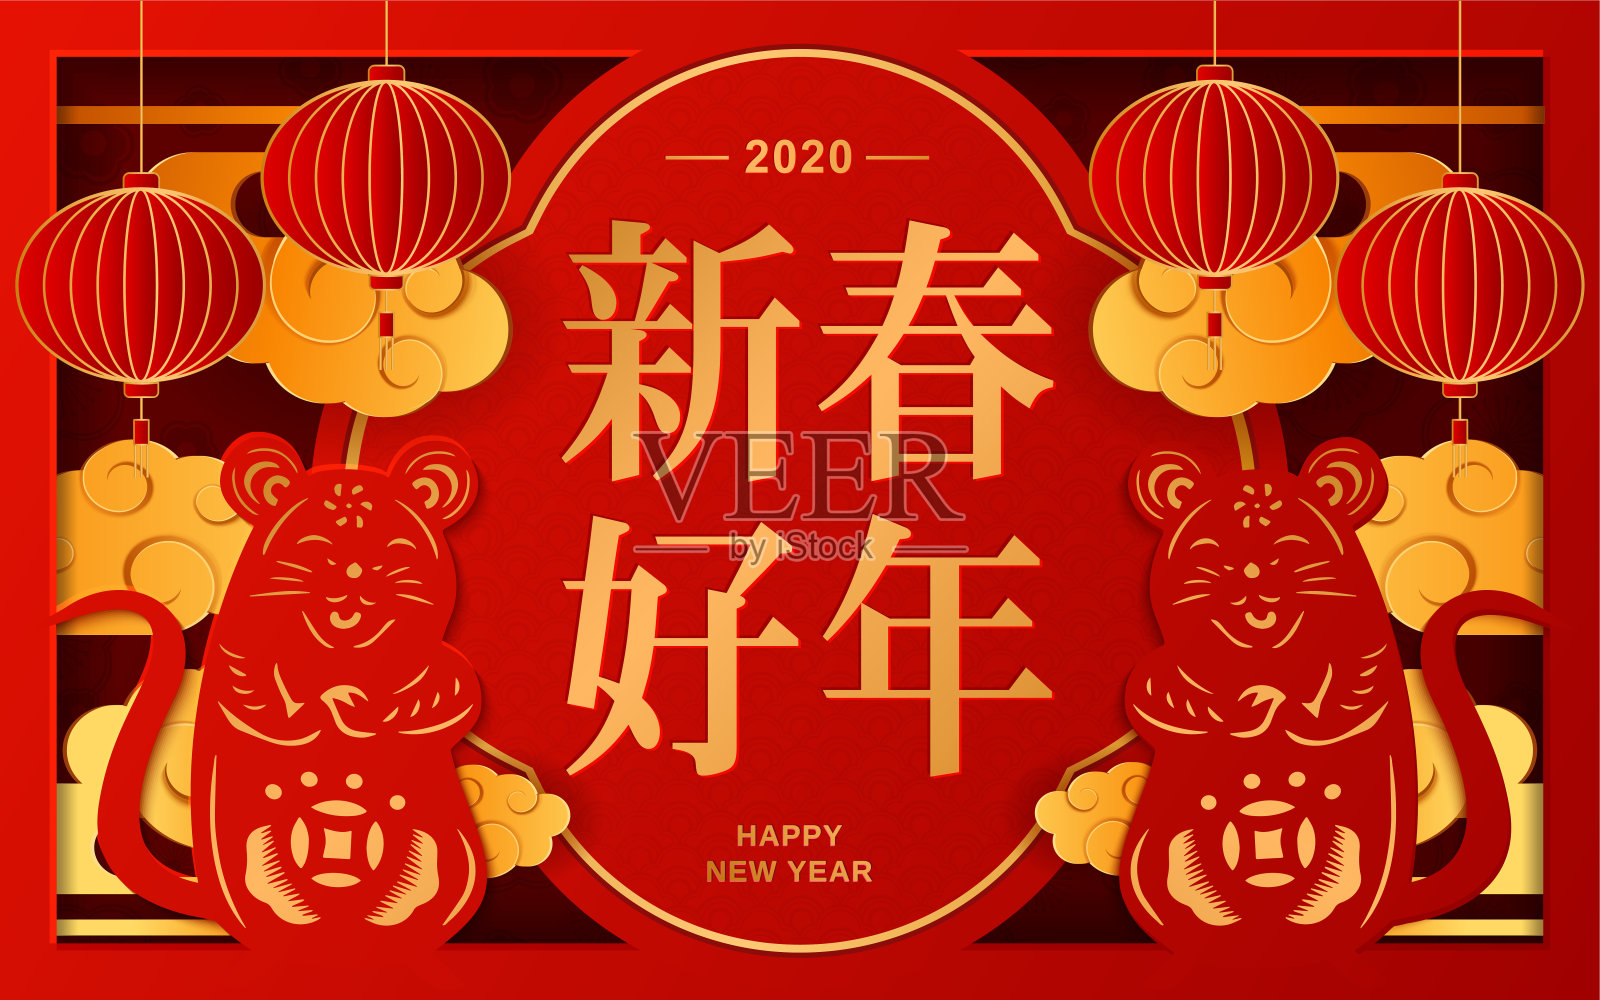 农历新年剪纸里的老鼠。中文翻译:“新年快乐”。纸艺术风格的灯笼和亚洲云设计模板素材